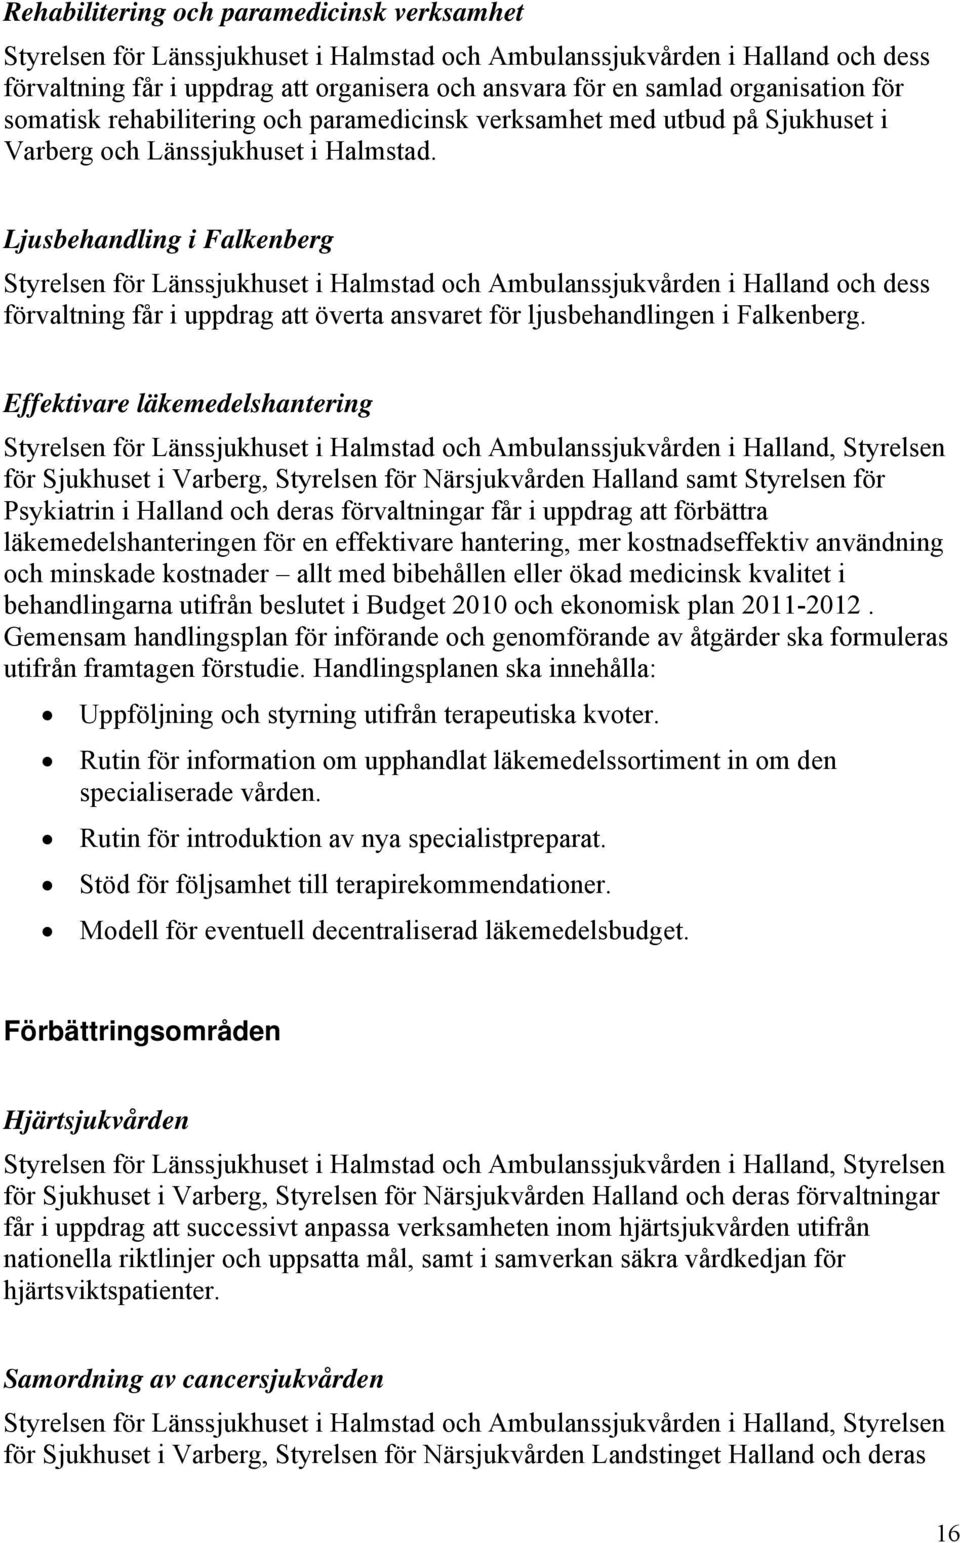 Ljusbehandling i Falkenberg Styrelsen för Länssjukhuset i Halmstad och Ambulanssjukvården i Halland och dess förvaltning får i uppdrag att överta ansvaret för ljusbehandlingen i Falkenberg.